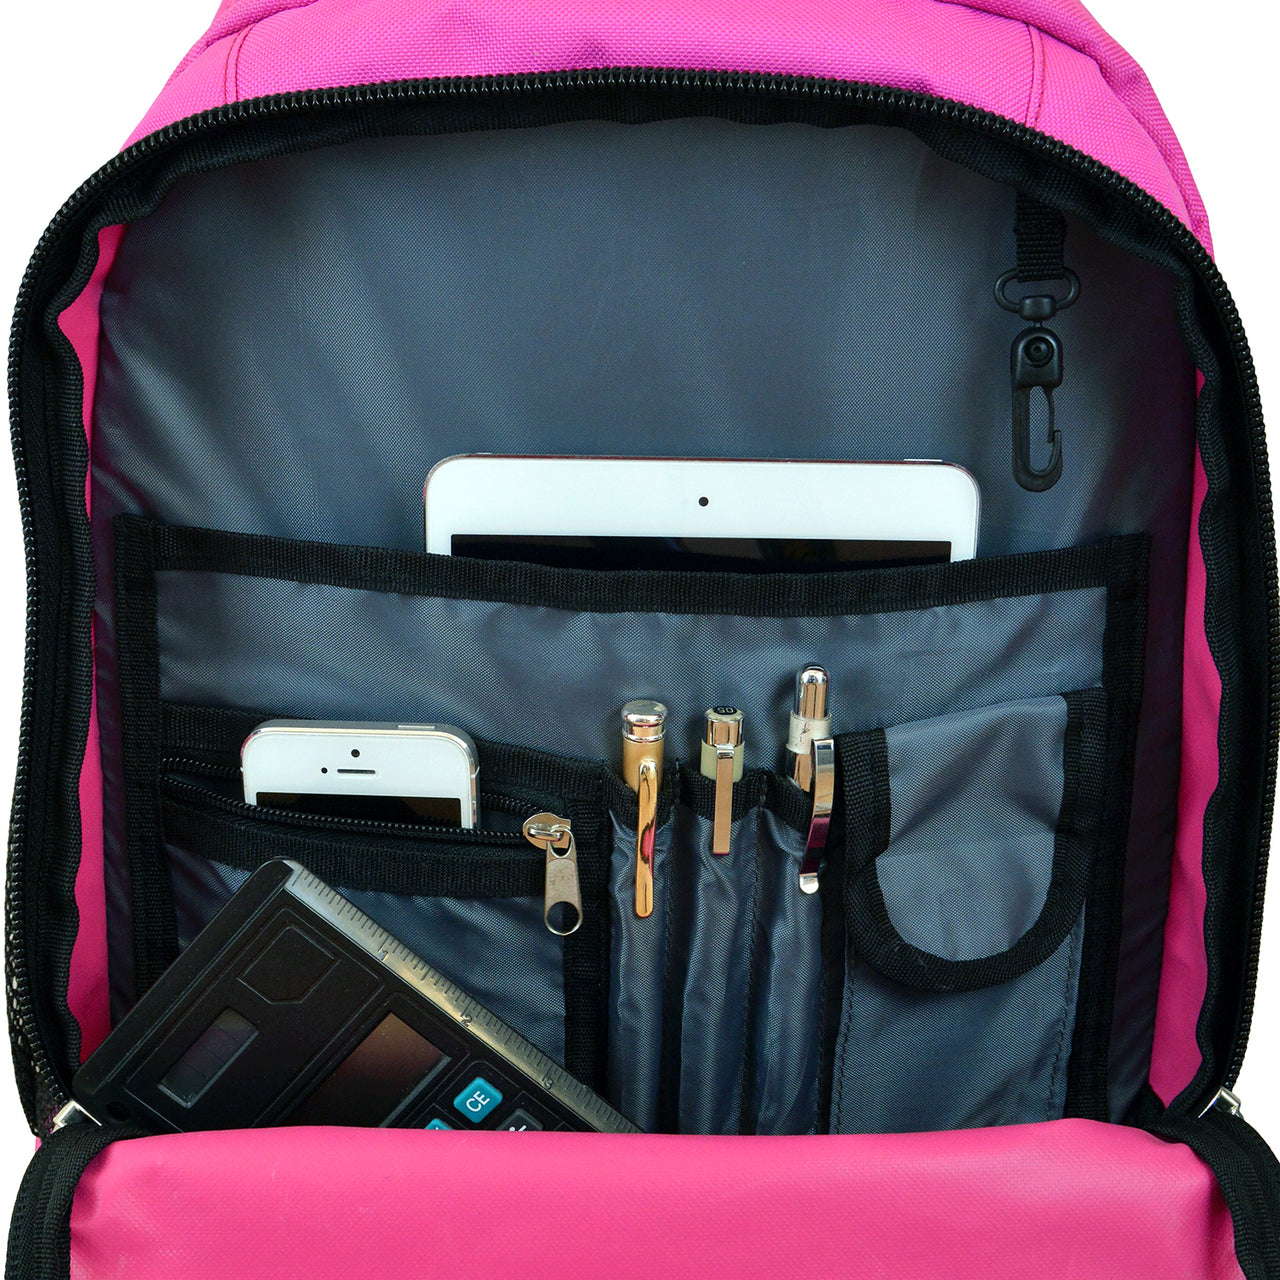 Cincinnati Premium Wheeled Backpack in Pink